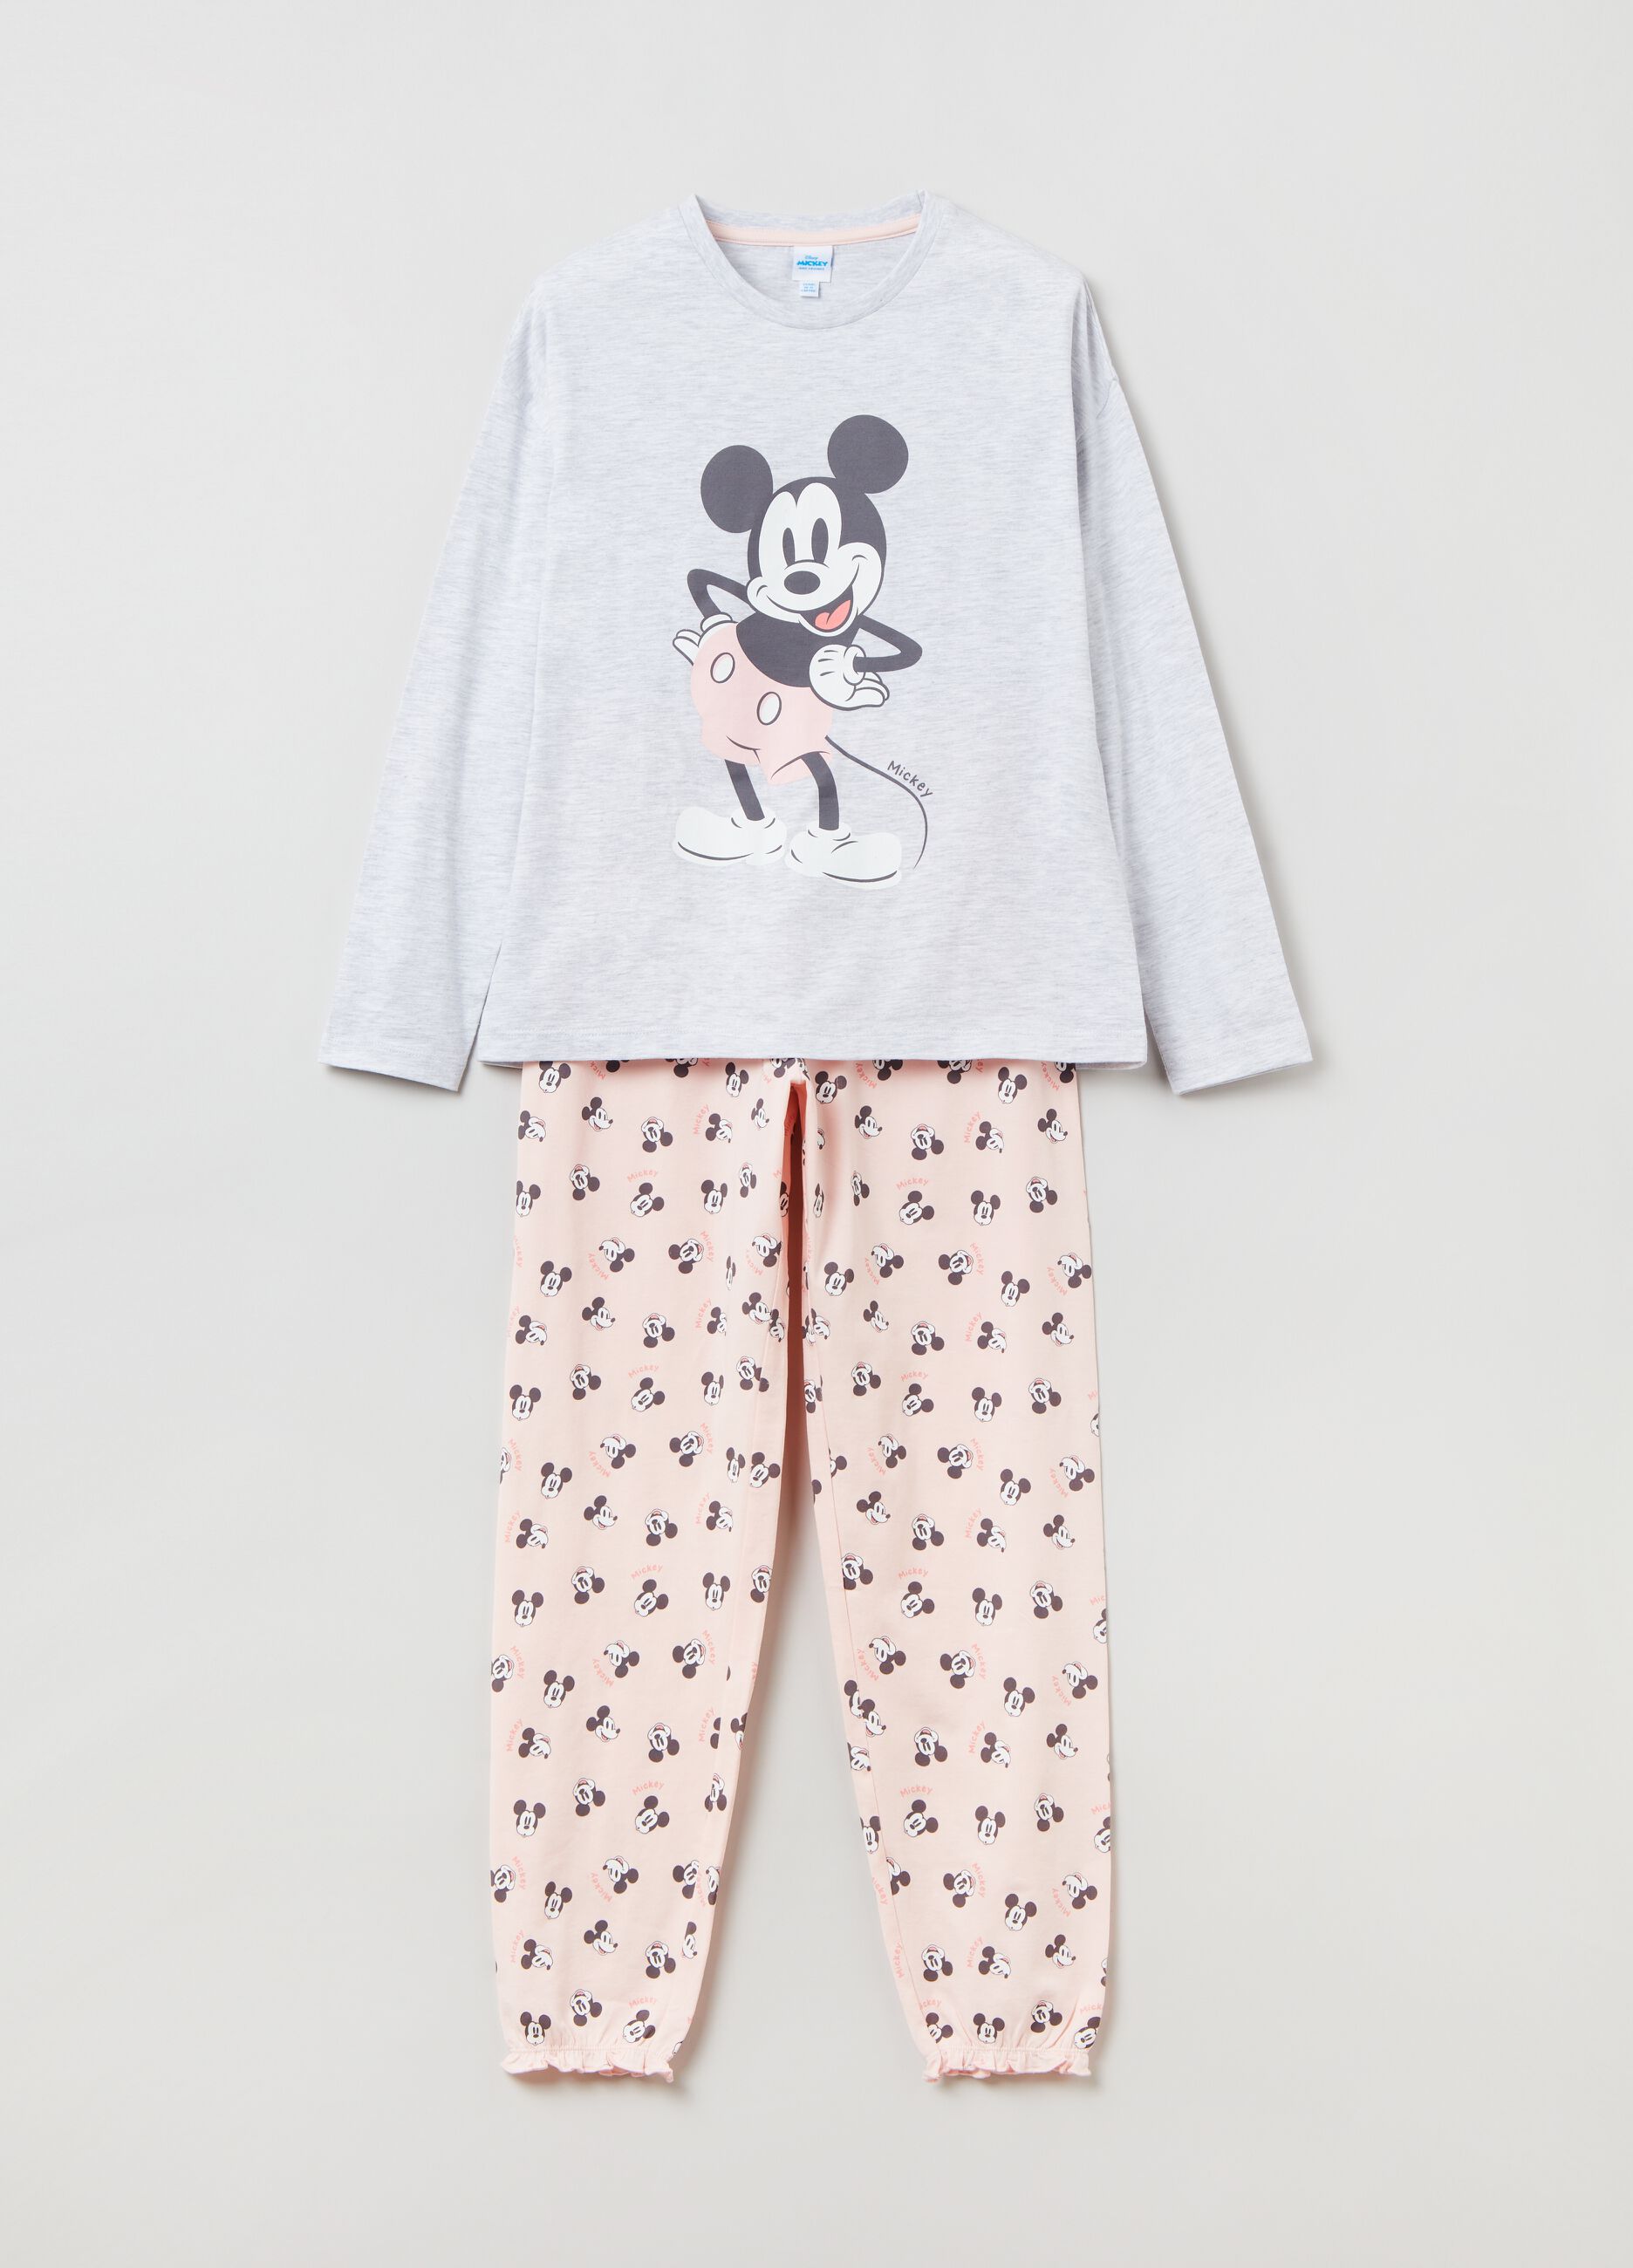 Long pyjamas with Disney Mickey Mouse print